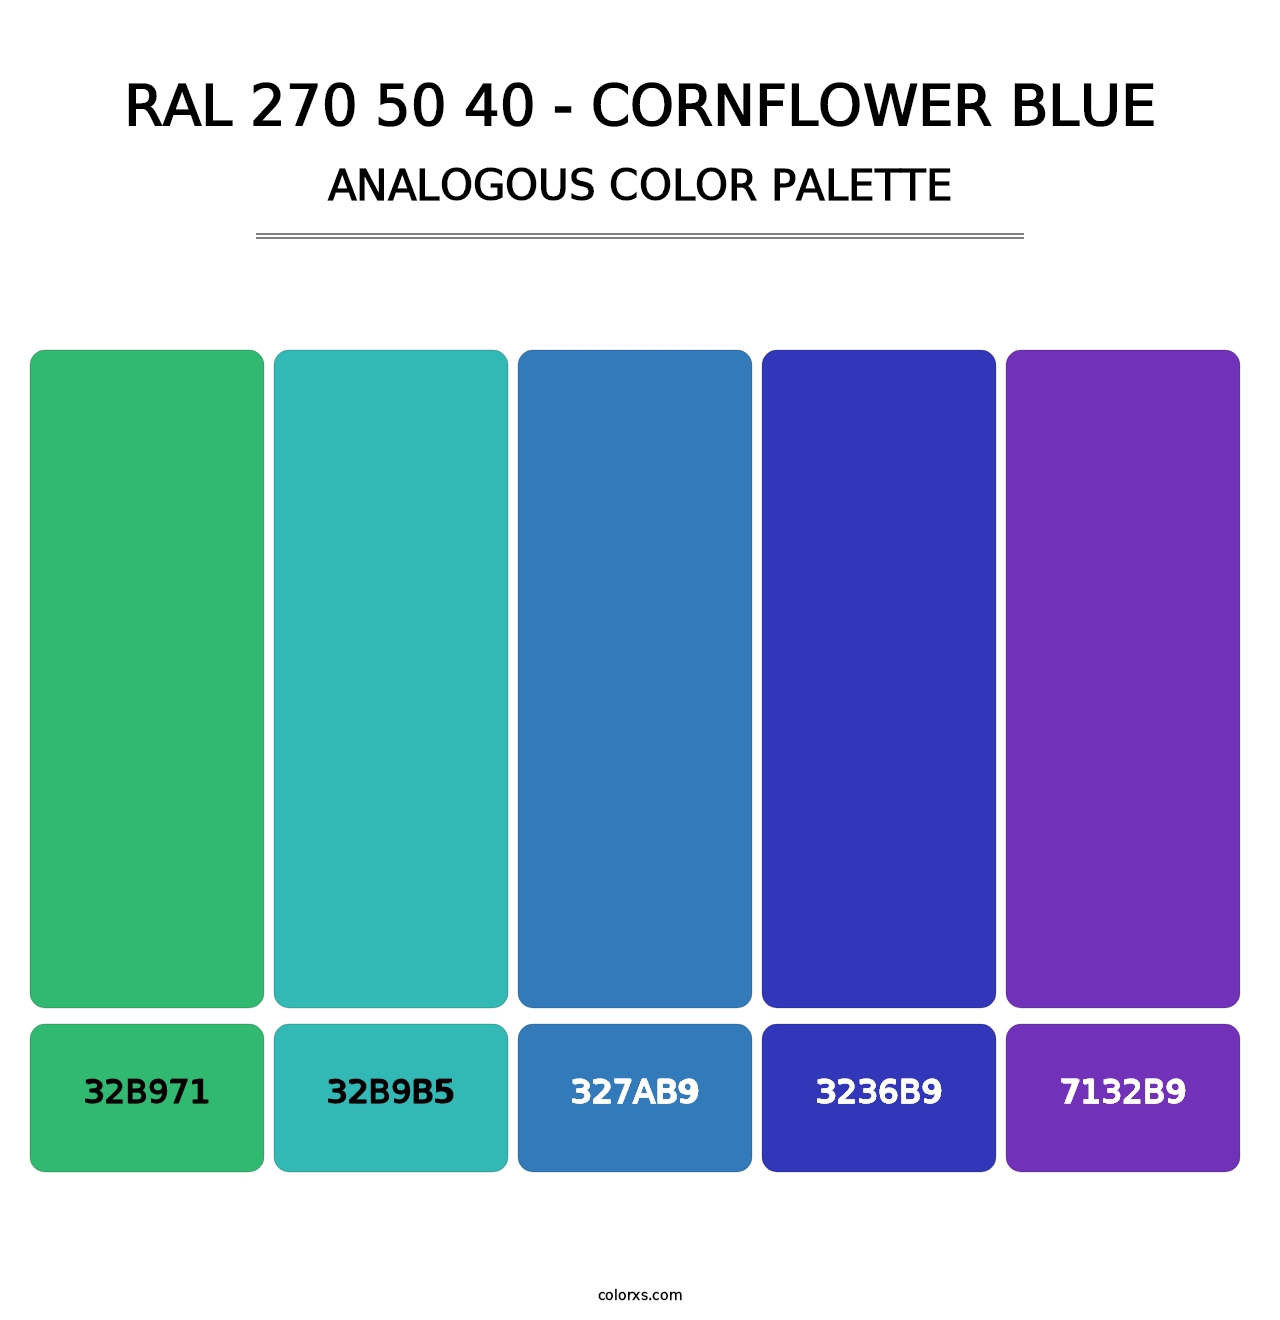 RAL 270 50 40 - Cornflower Blue - Analogous Color Palette